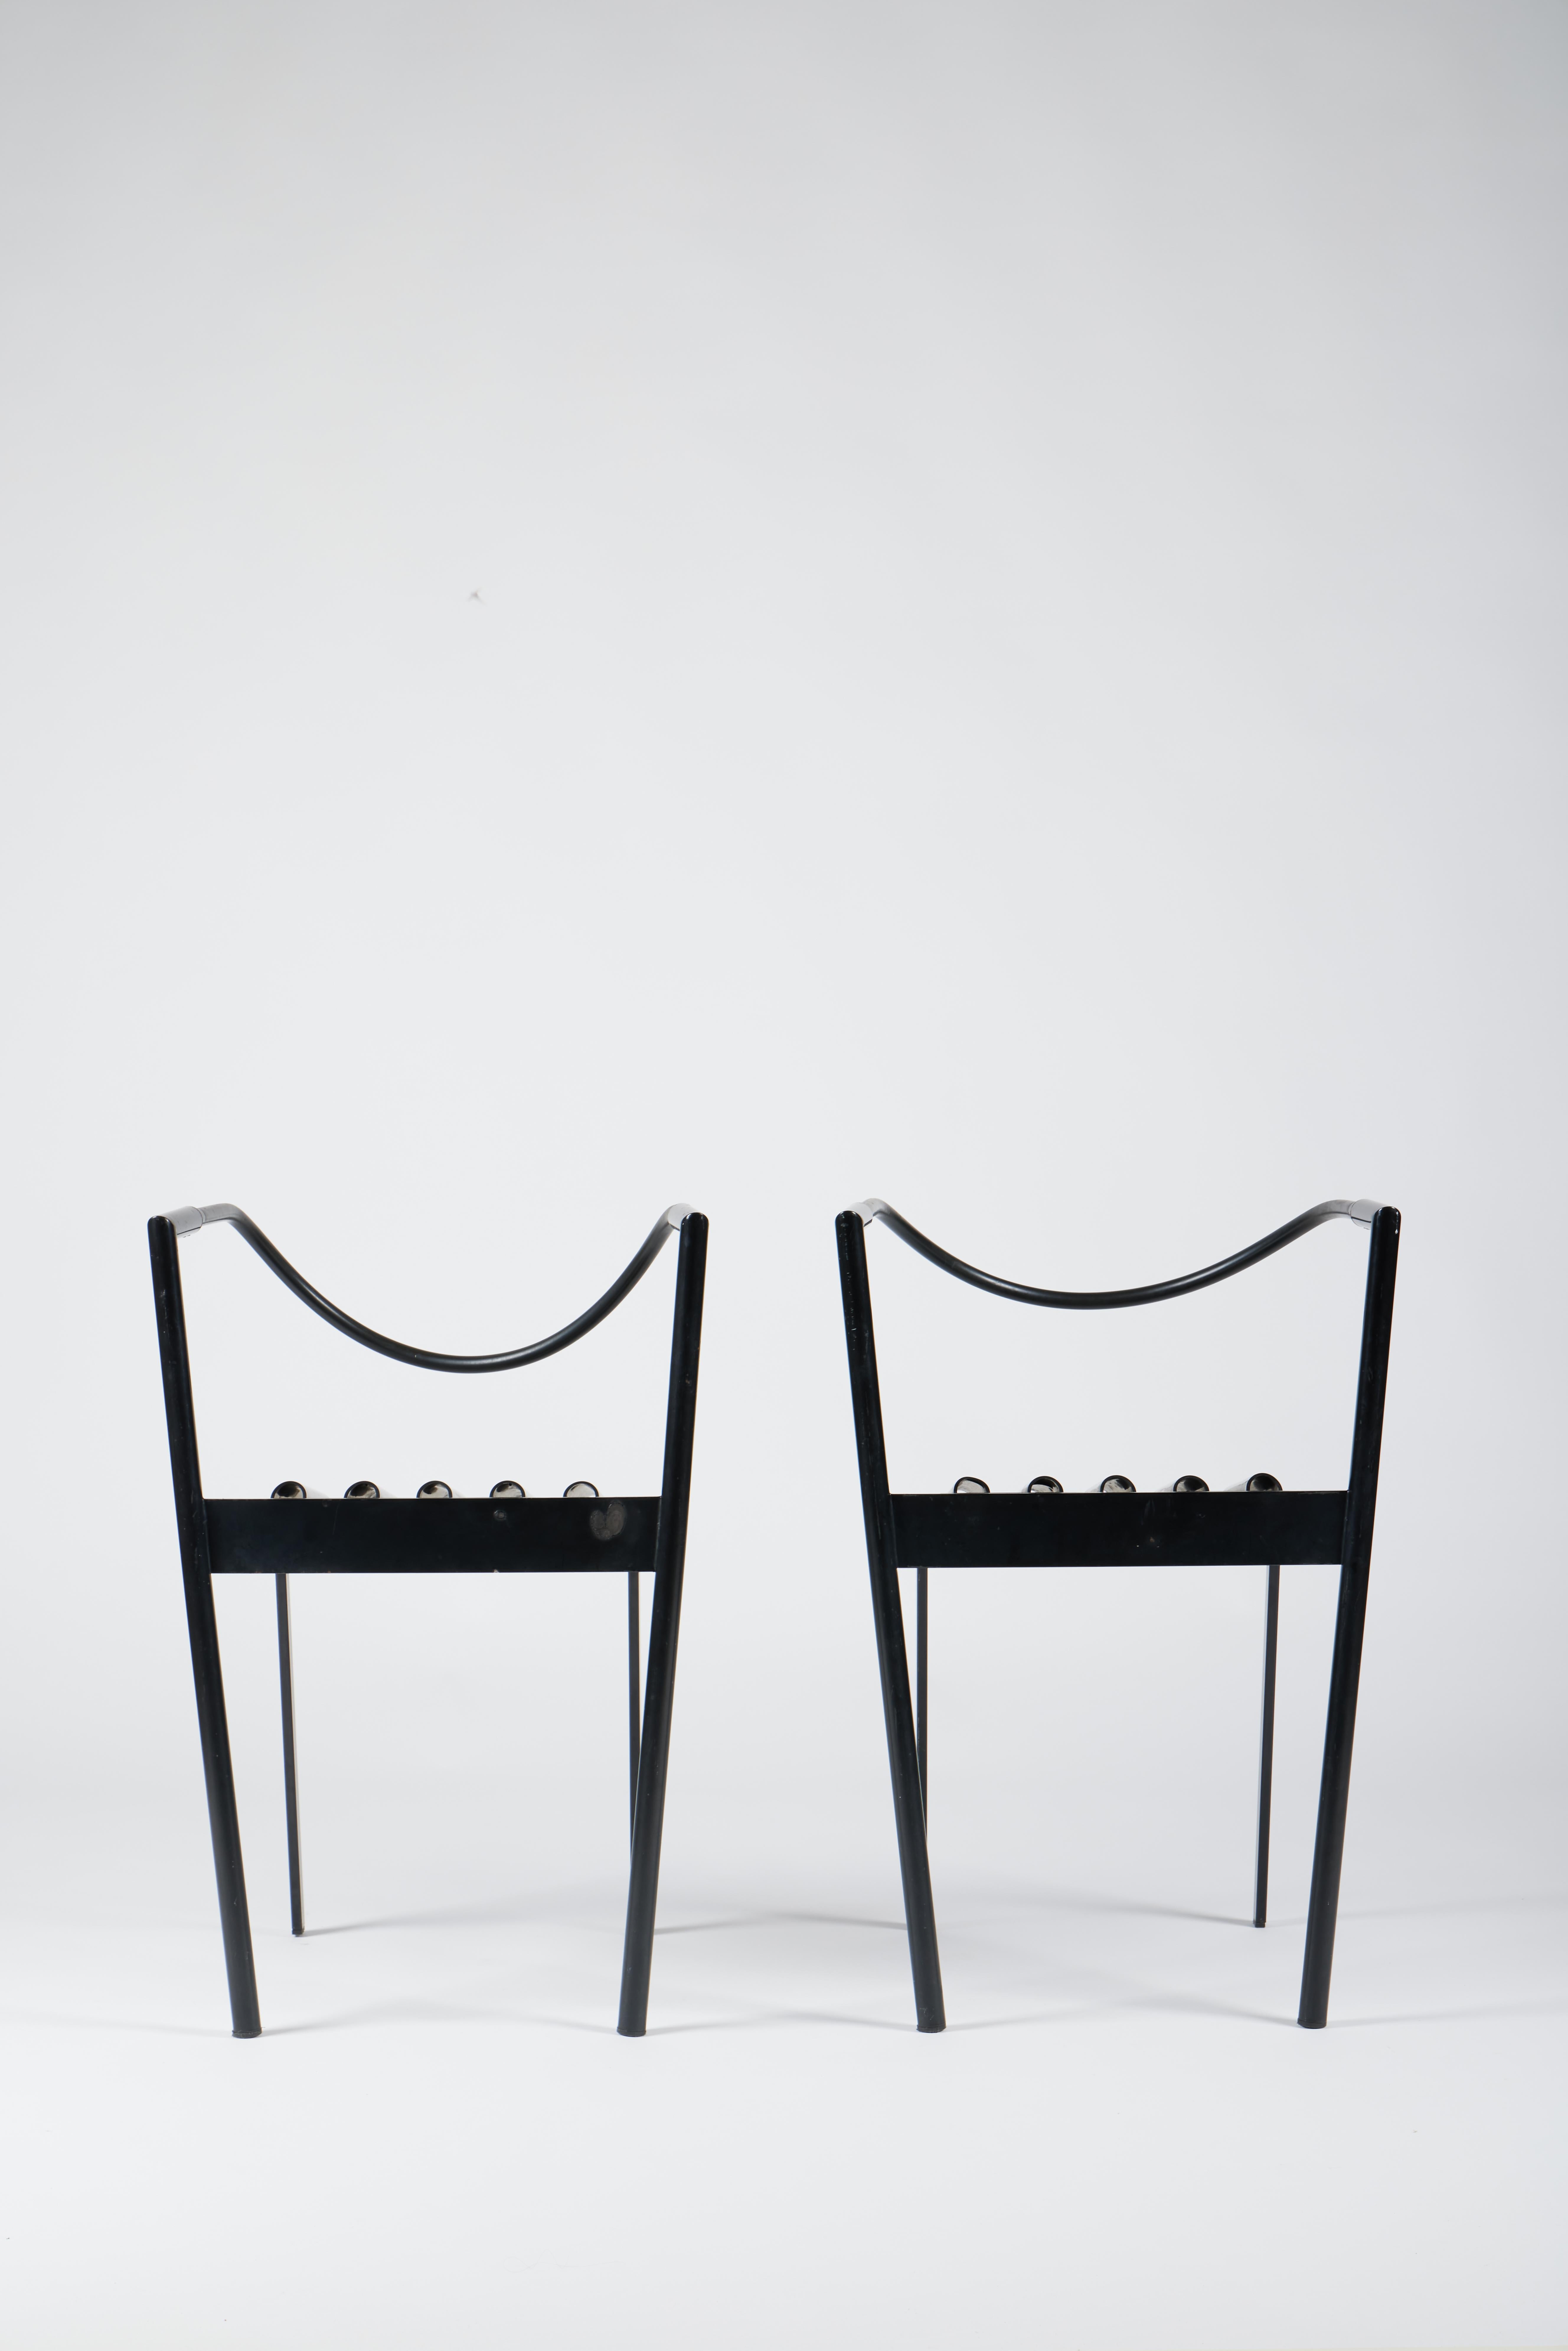 Ensemble de 2 chaises Hans et Alice de Paolo Pallucco et Mireille Rivier, 1986

Très rare ensemble de 2 chaises Hans e Alice par Paolo Pallucco et Mireille Rivier en acier laqué noir et caoutchouc. 

Le designer italien Paolo Pallucco a fondé le